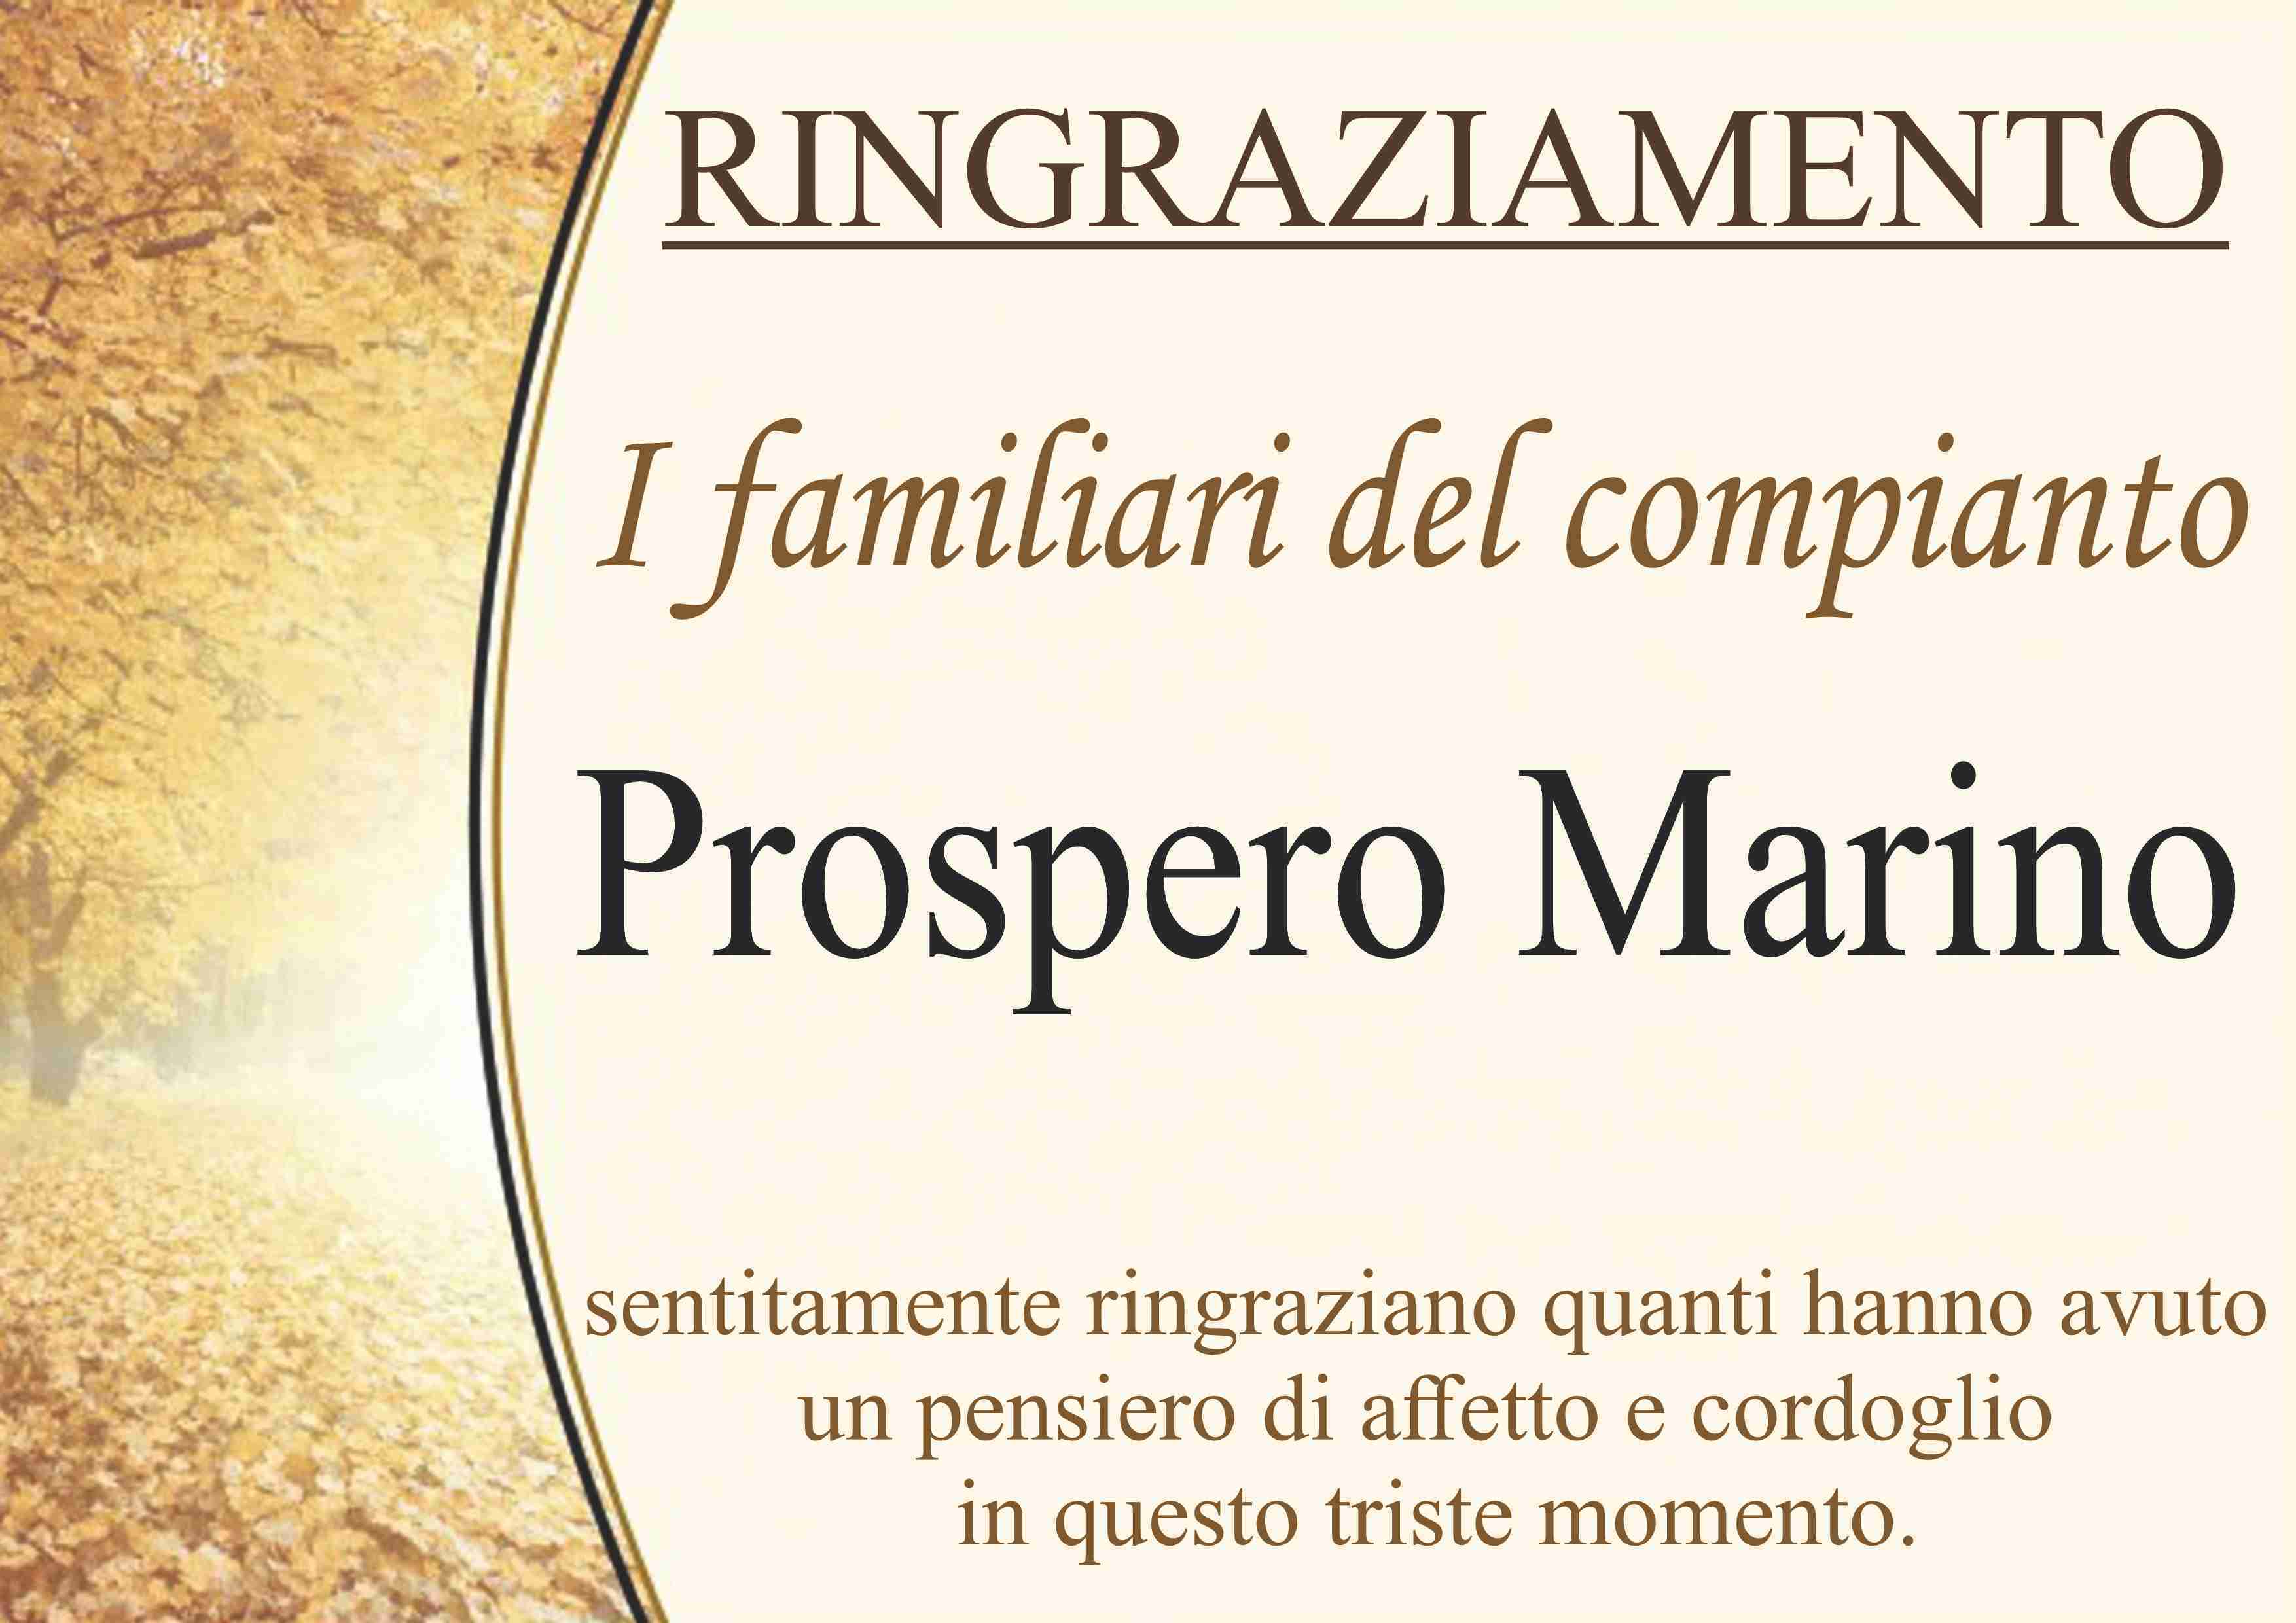 Prospero Marino